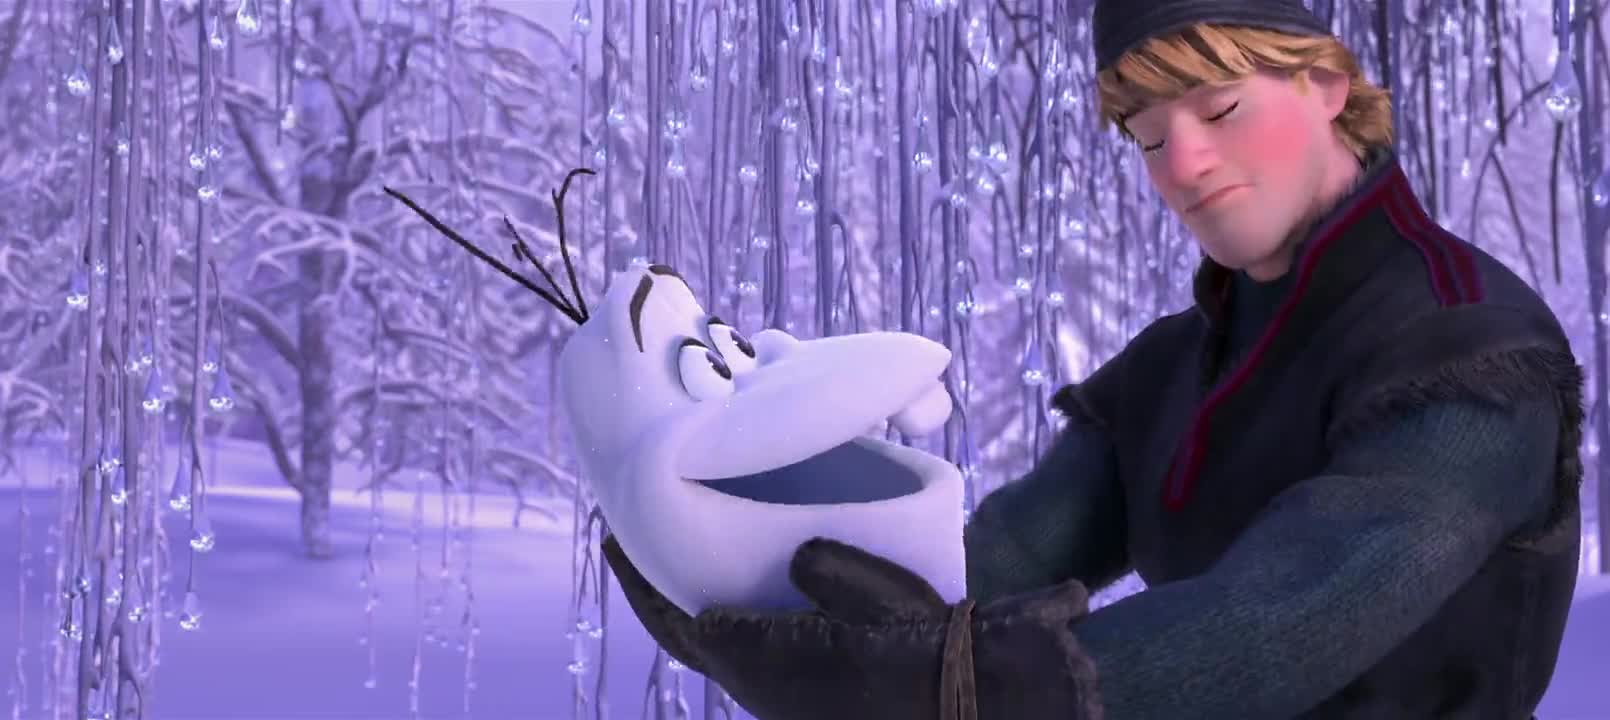 Замръзналото кралство - дублиран трейлър на анимационната комедия :)